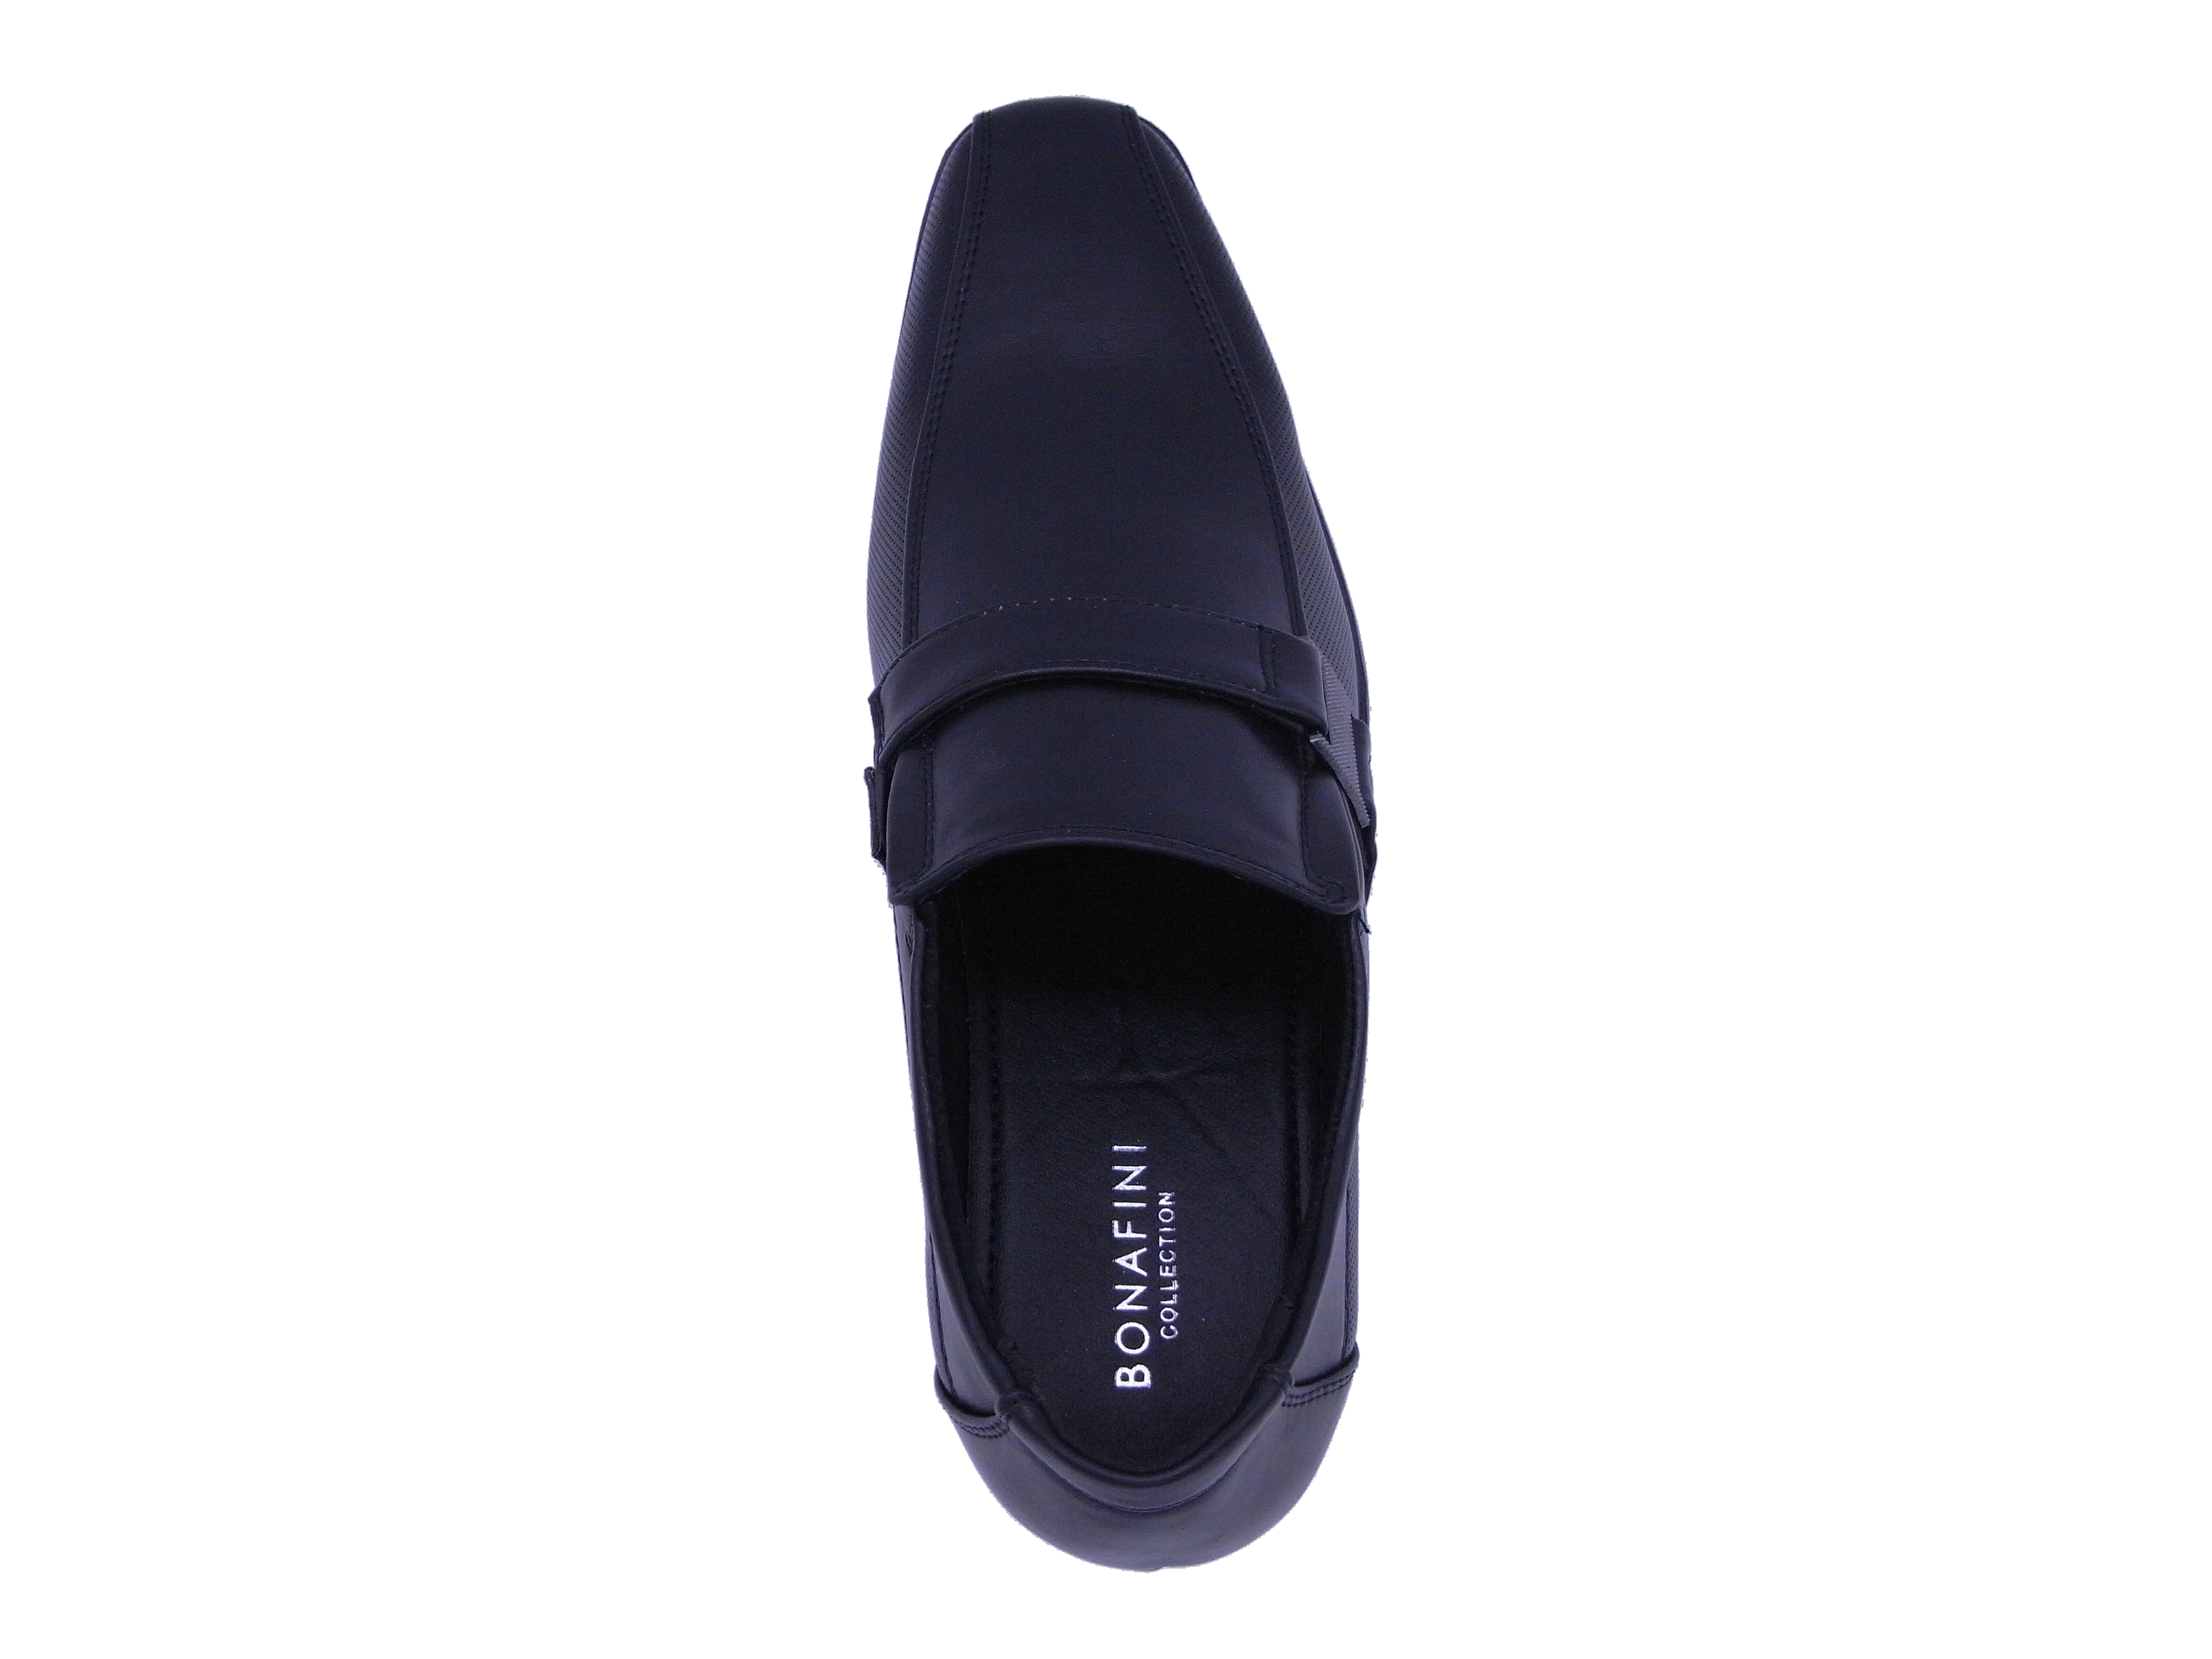 Men Shoes Slip On Strap Loafer Black Color Size US8.5 - image 5 of 5